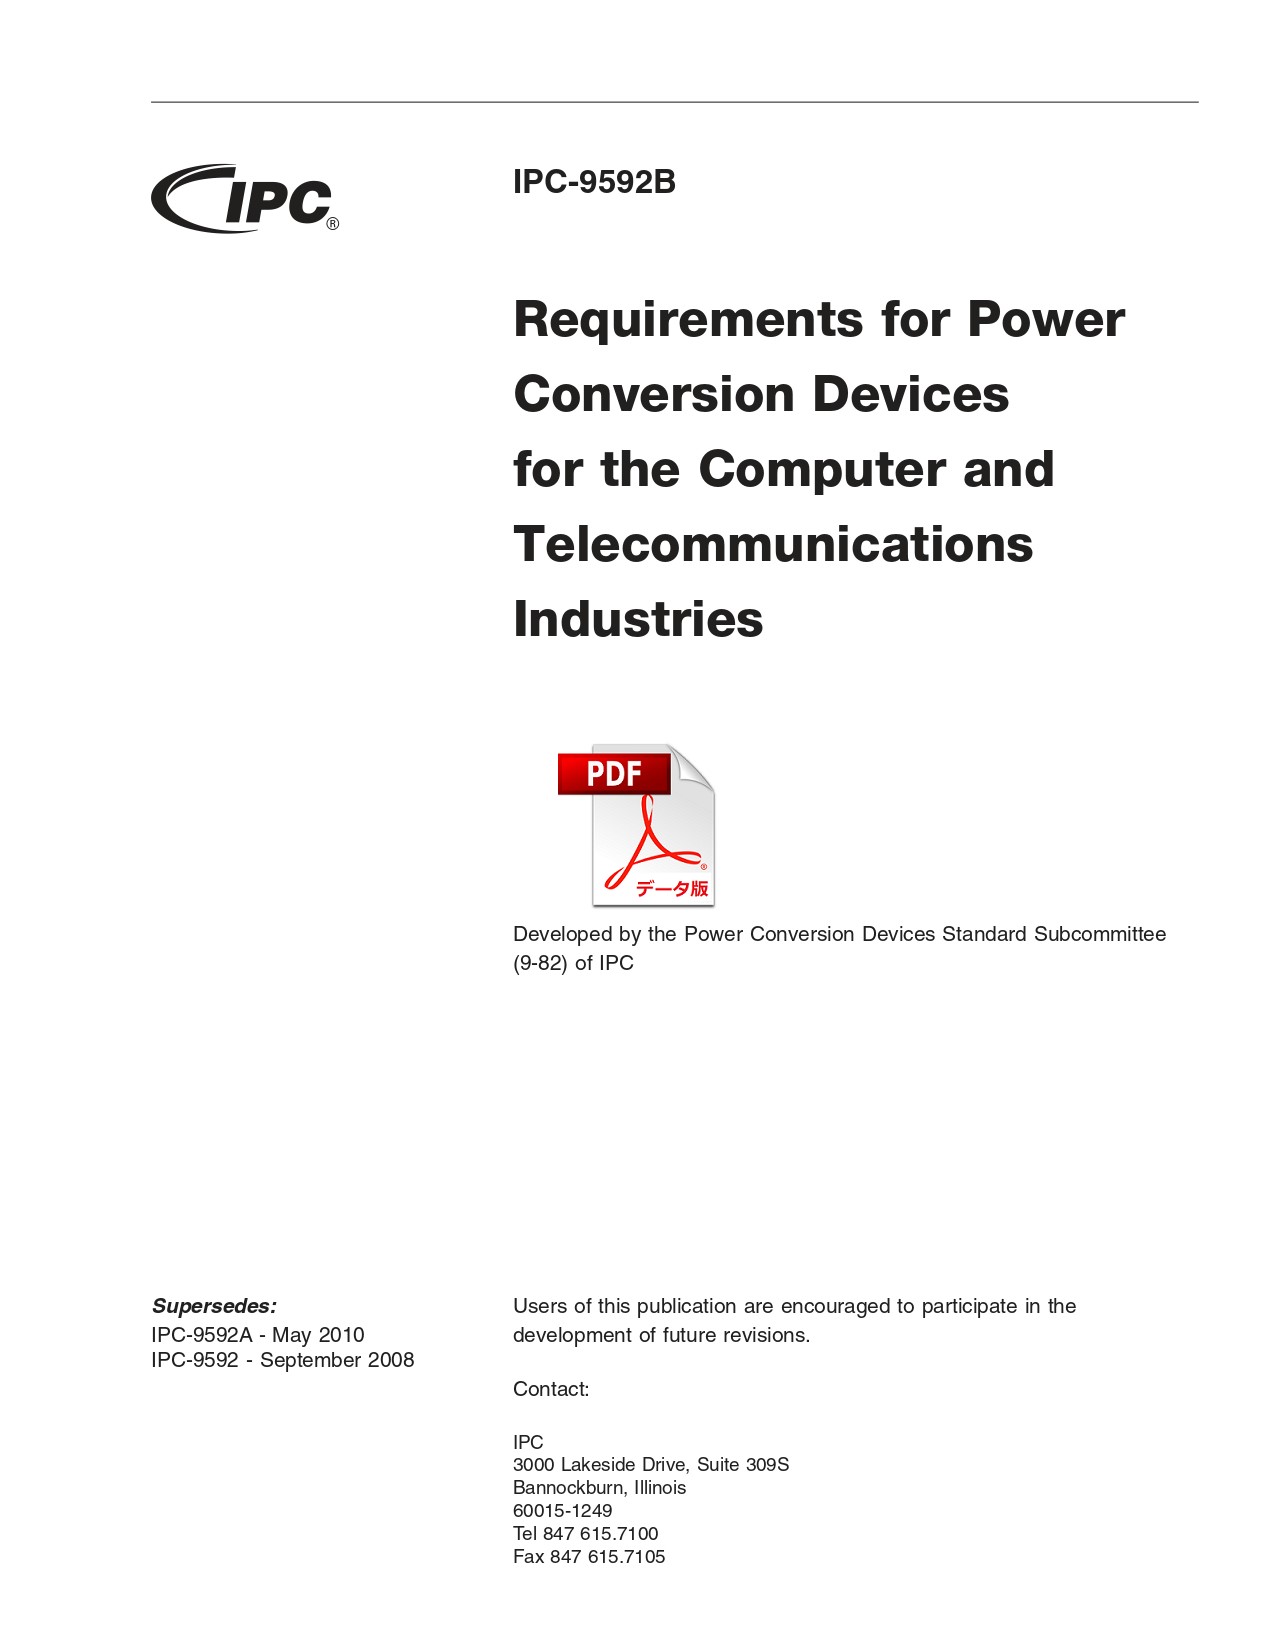 【英語版】IPC-9592B: Requirements for Power Conversion Devices for the Computer and Telecommunications Industries